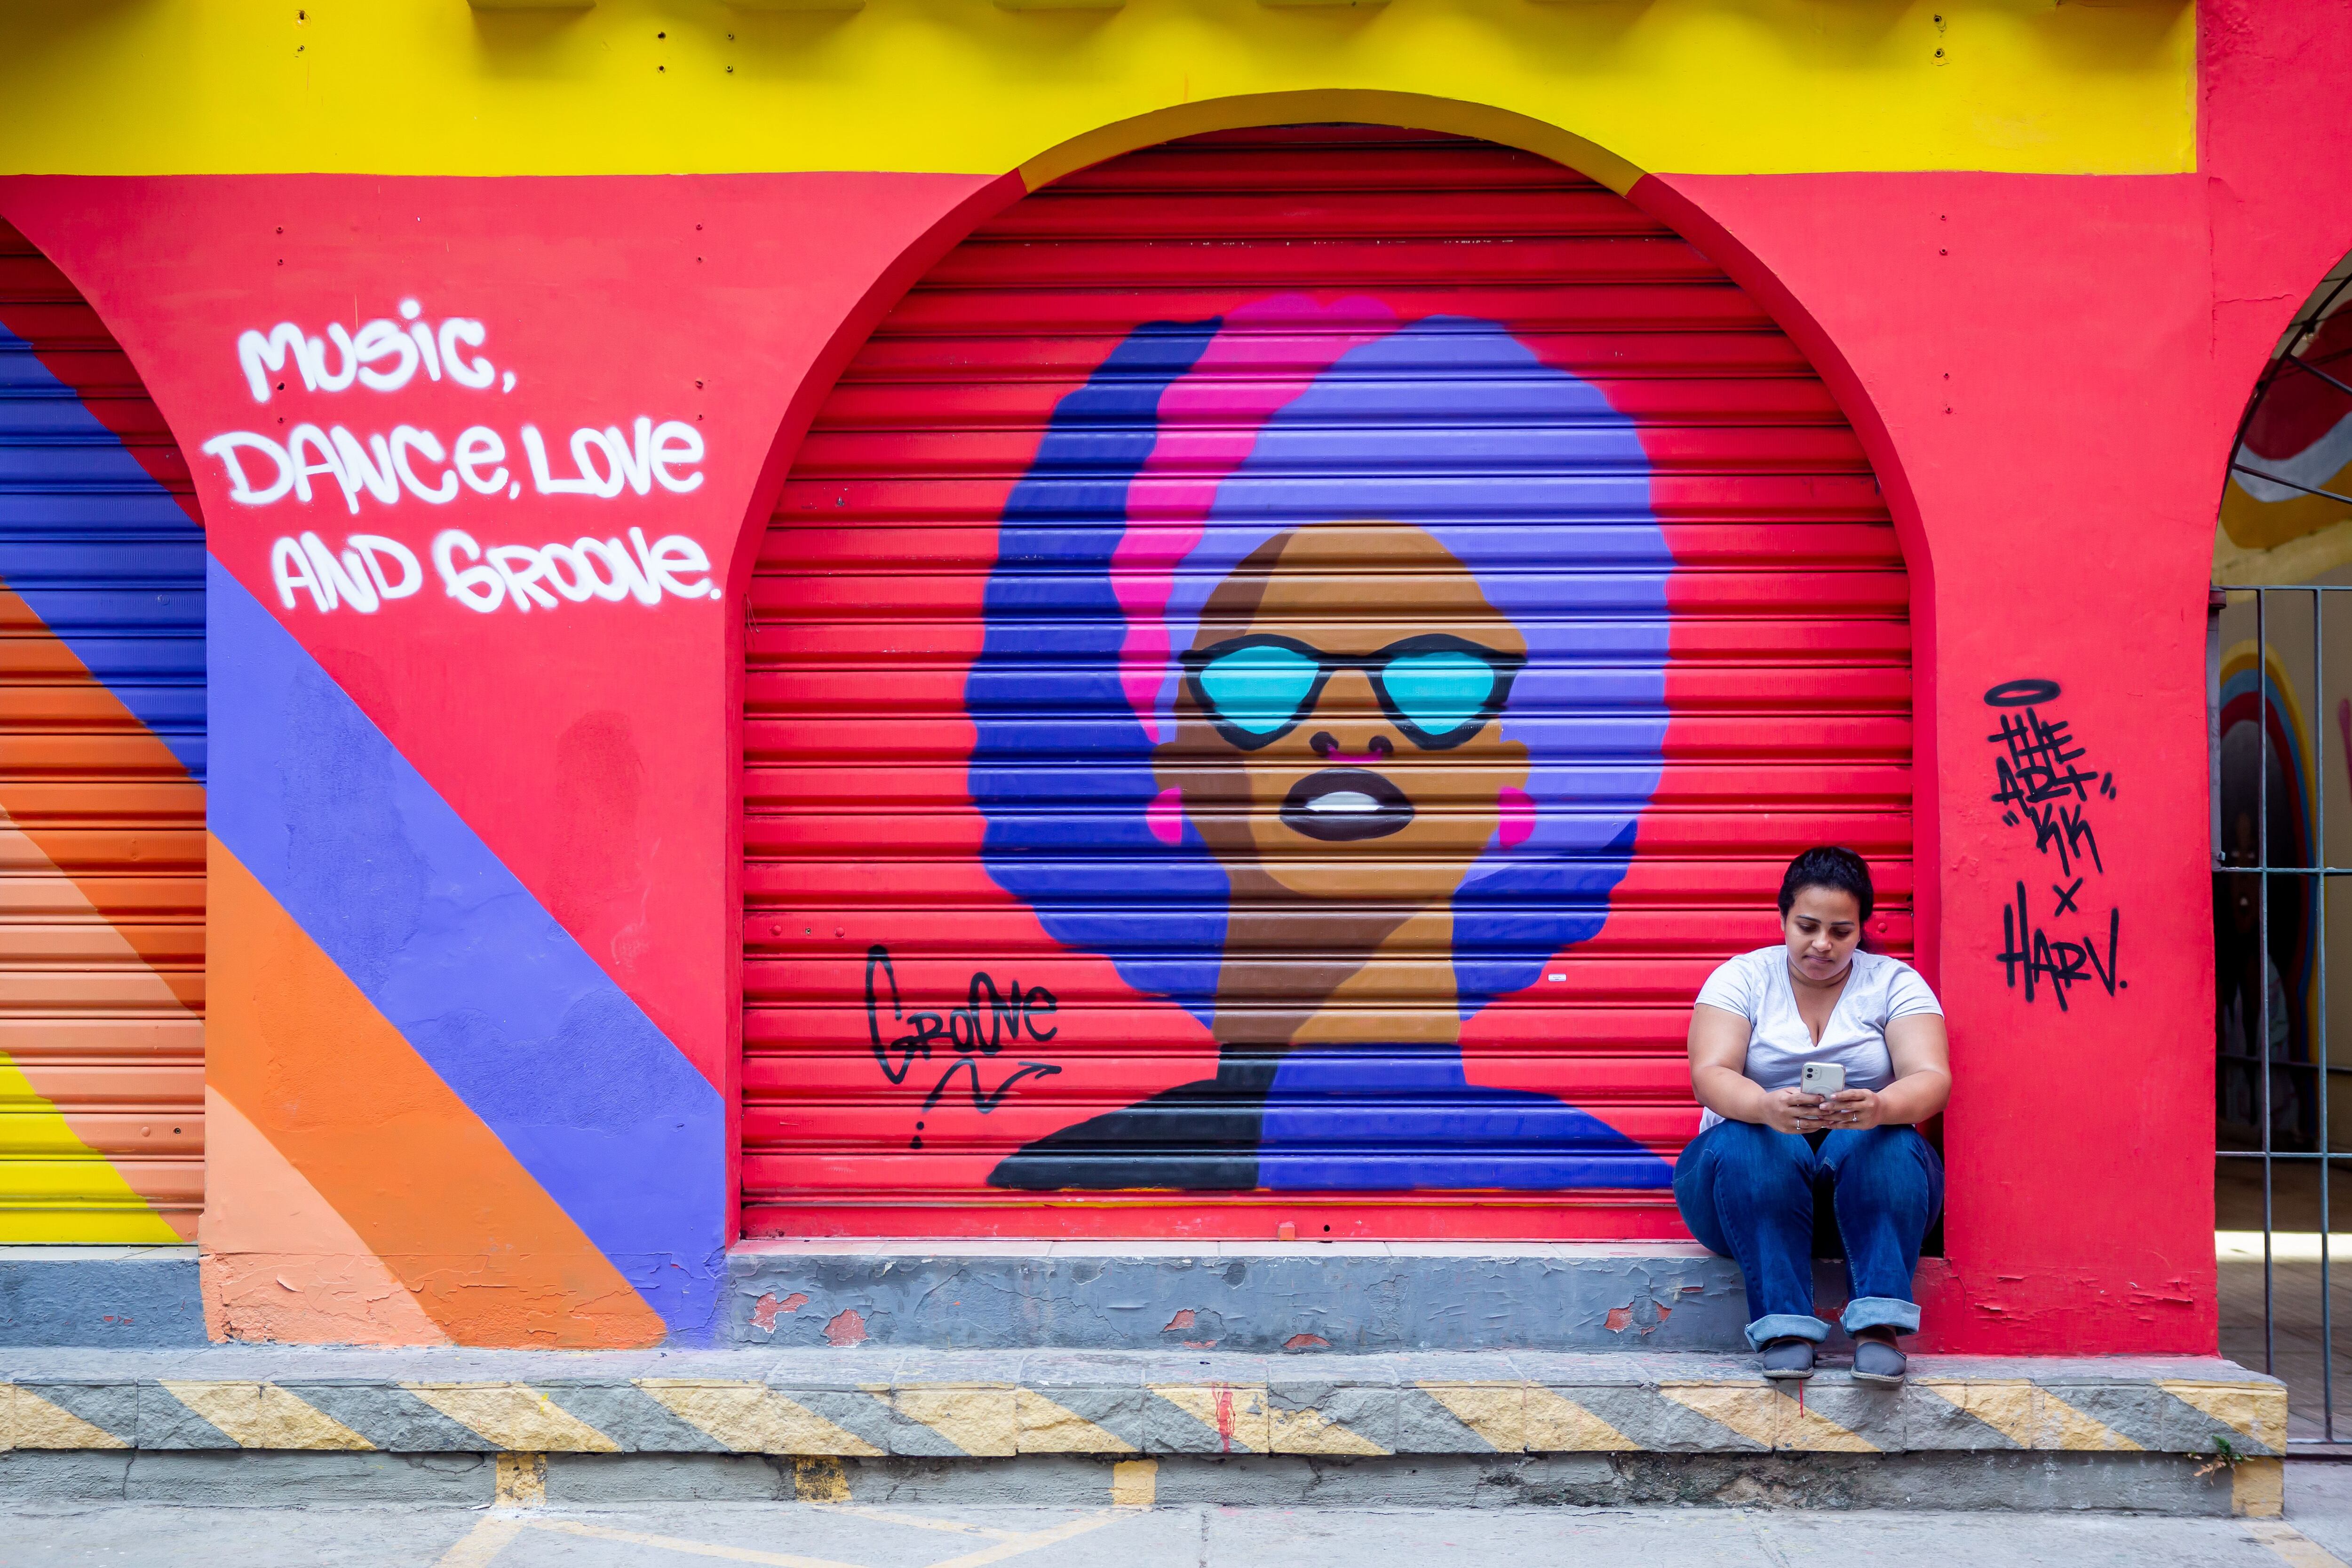 Un mural sobre música en una calle de São Paulo.